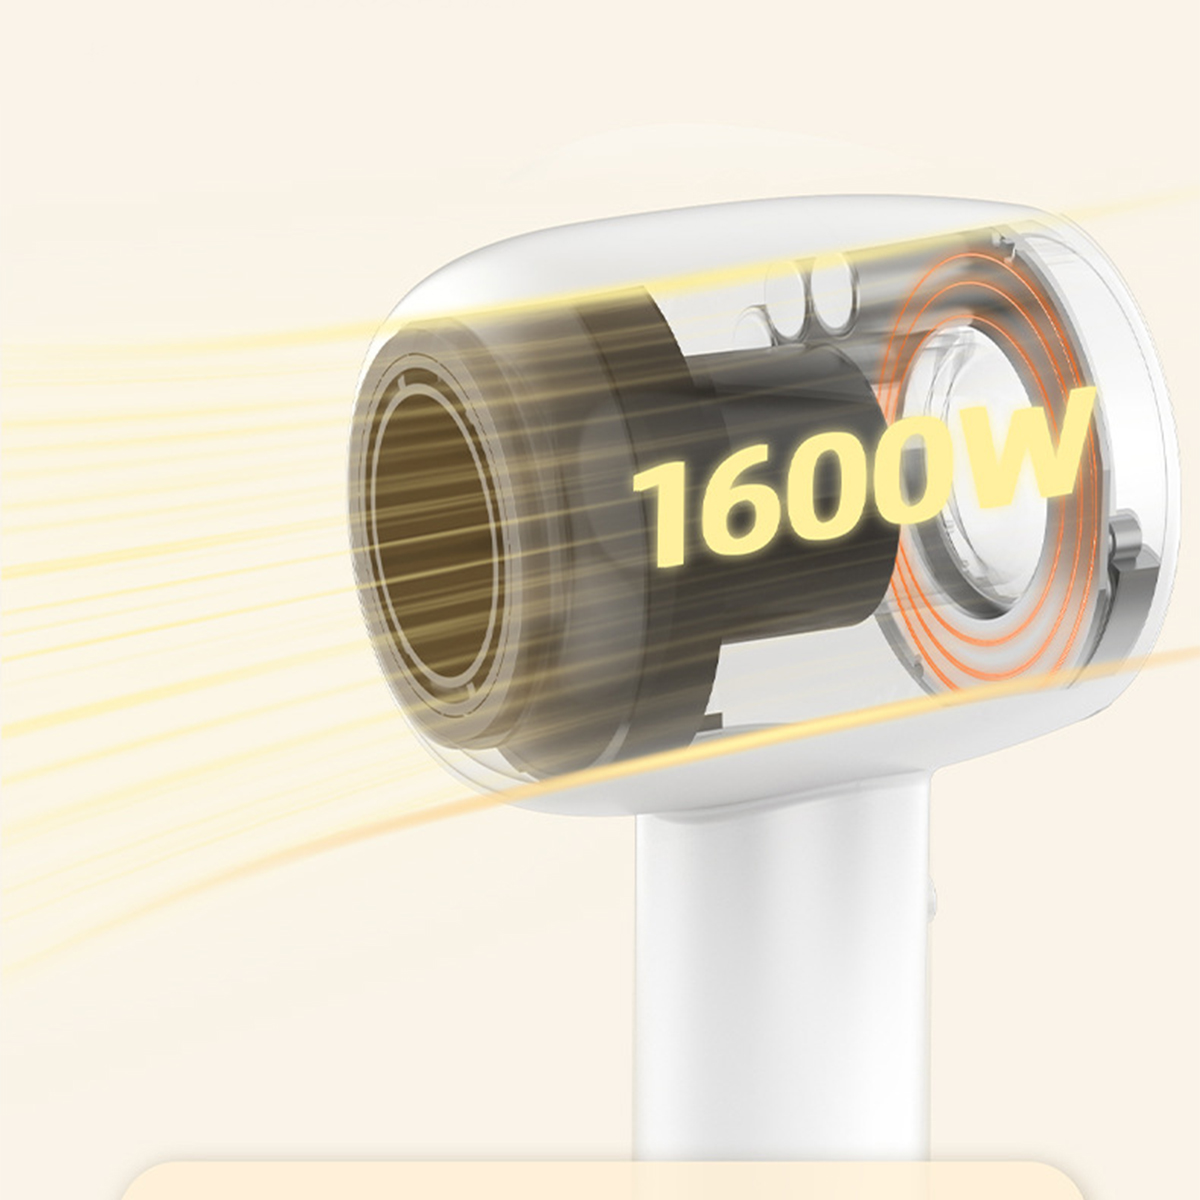 leisem 1600W Leistungsstarker SHAOKE mit Watt) Ionic Haartrockner Weiß,Gold Betrieb (1600 Schnelltrocknung Haartrockner